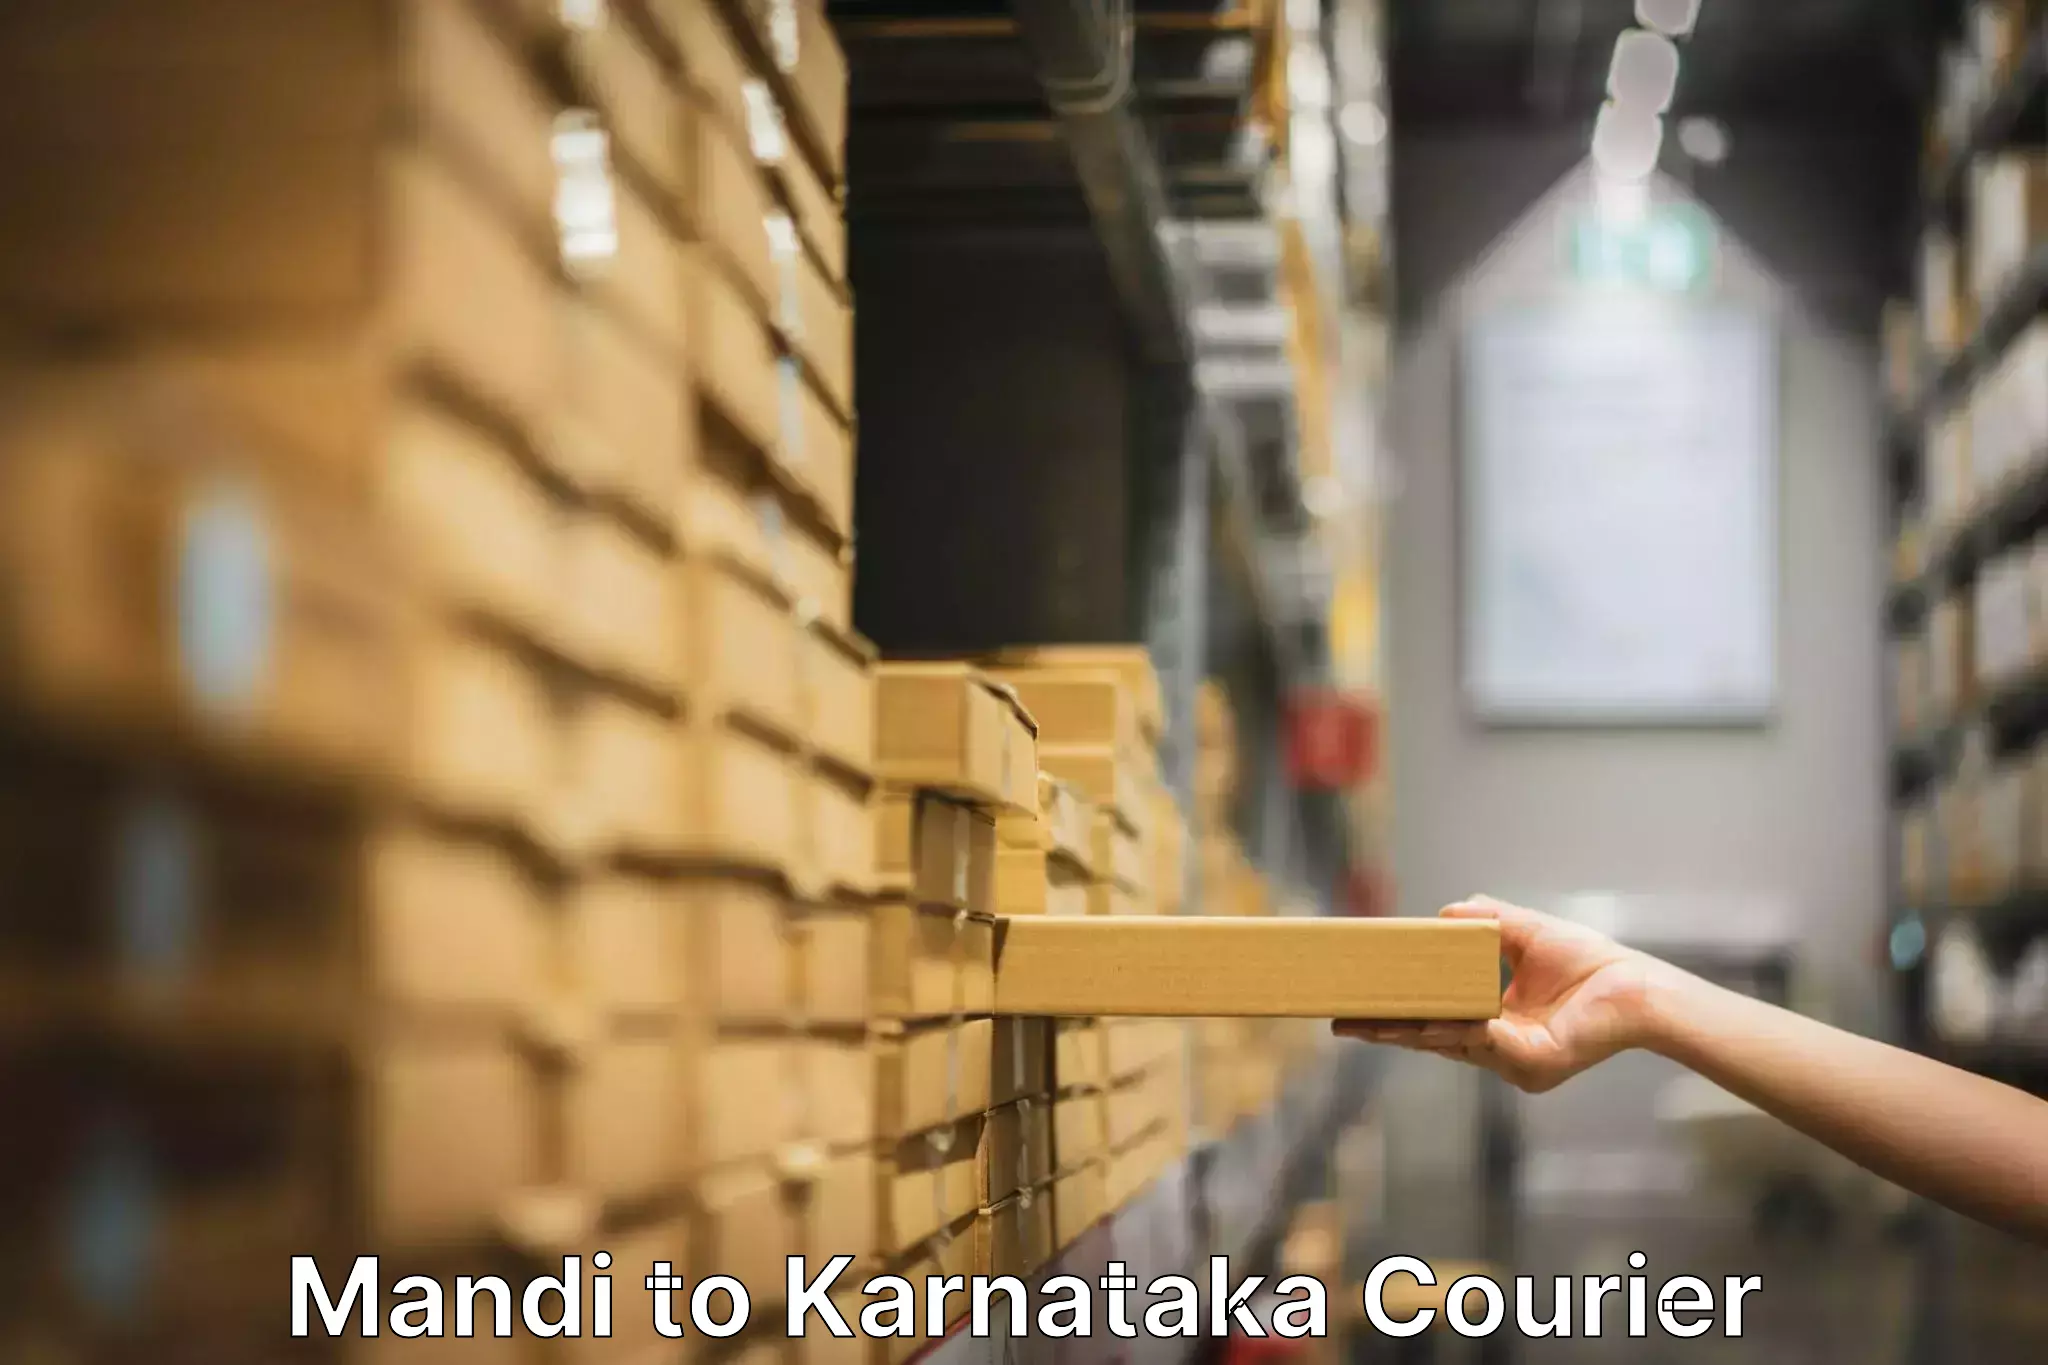 Personalized moving service Mandi to Karnataka